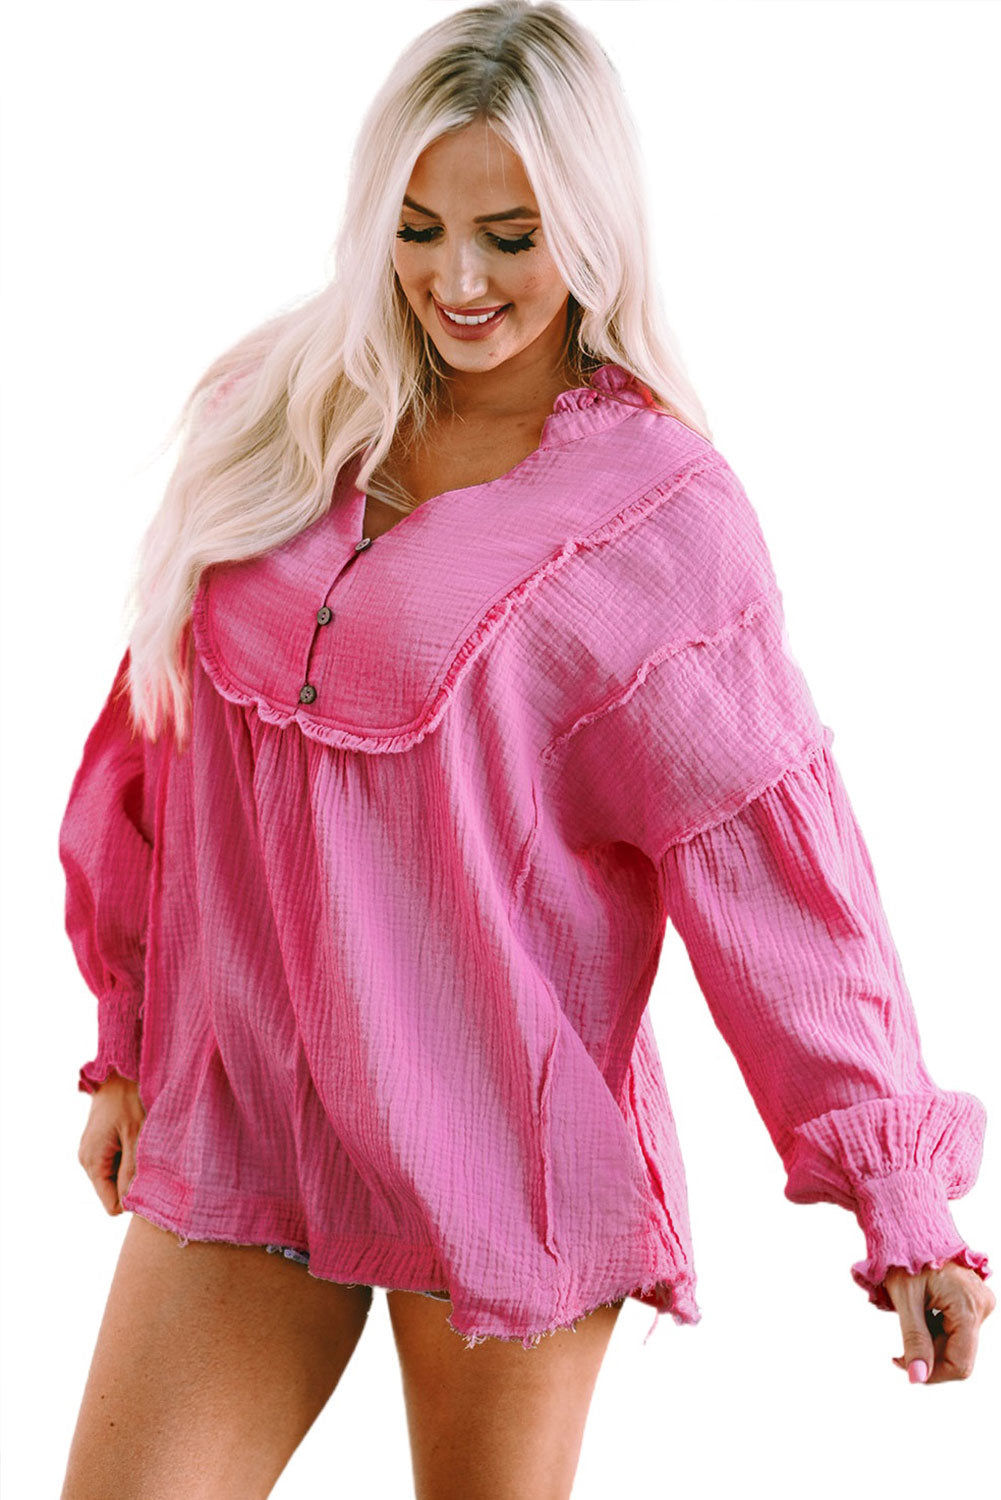 Rožnata retro bluza z naborkanimi šivi in ​​napihnjenimi rokavi